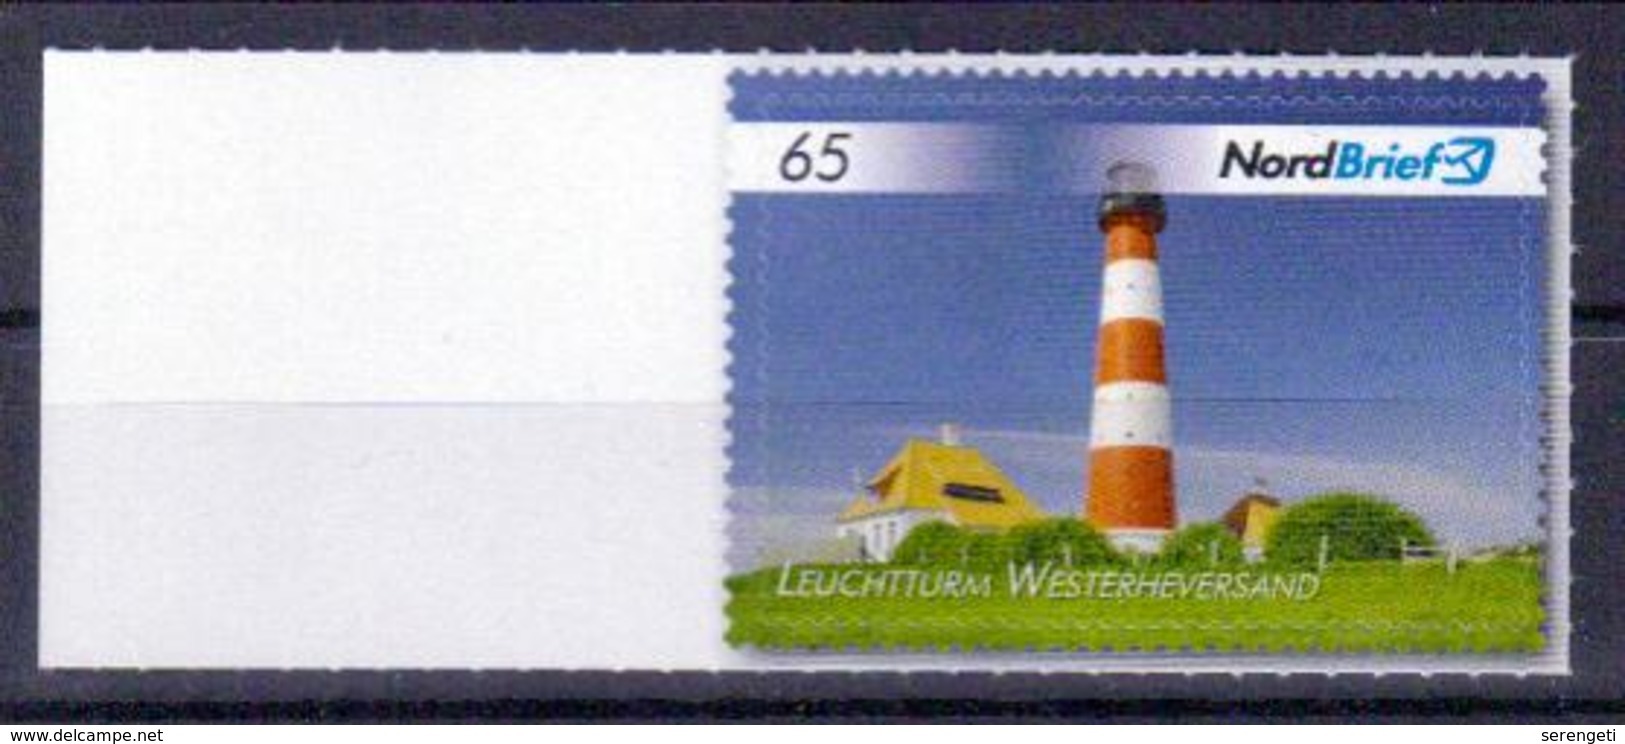 Deutschland Nordbrief 'Leuchtturm Westerheversand' / Germany 'Westerheversand Lighthouse' **/MNH 2017 - Leuchttürme